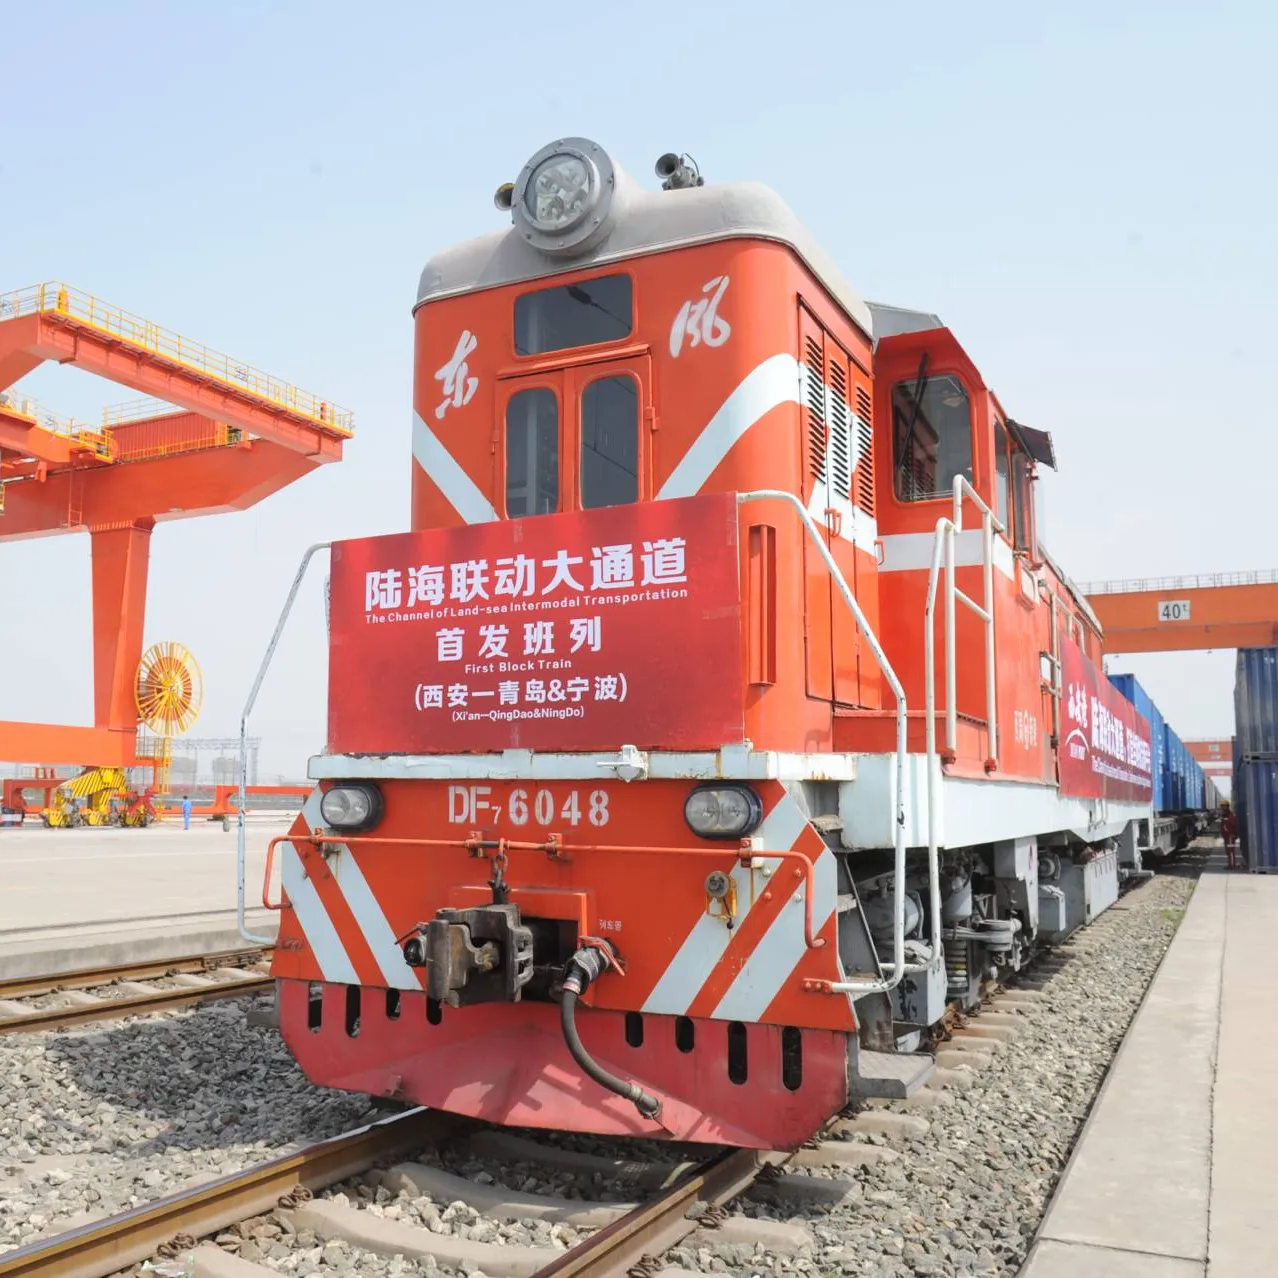 China Freight from Suzhou Jinan Qingdao wuhan fuzhou zhubao To Moscow Russia Train Shipping By The Railway Freight